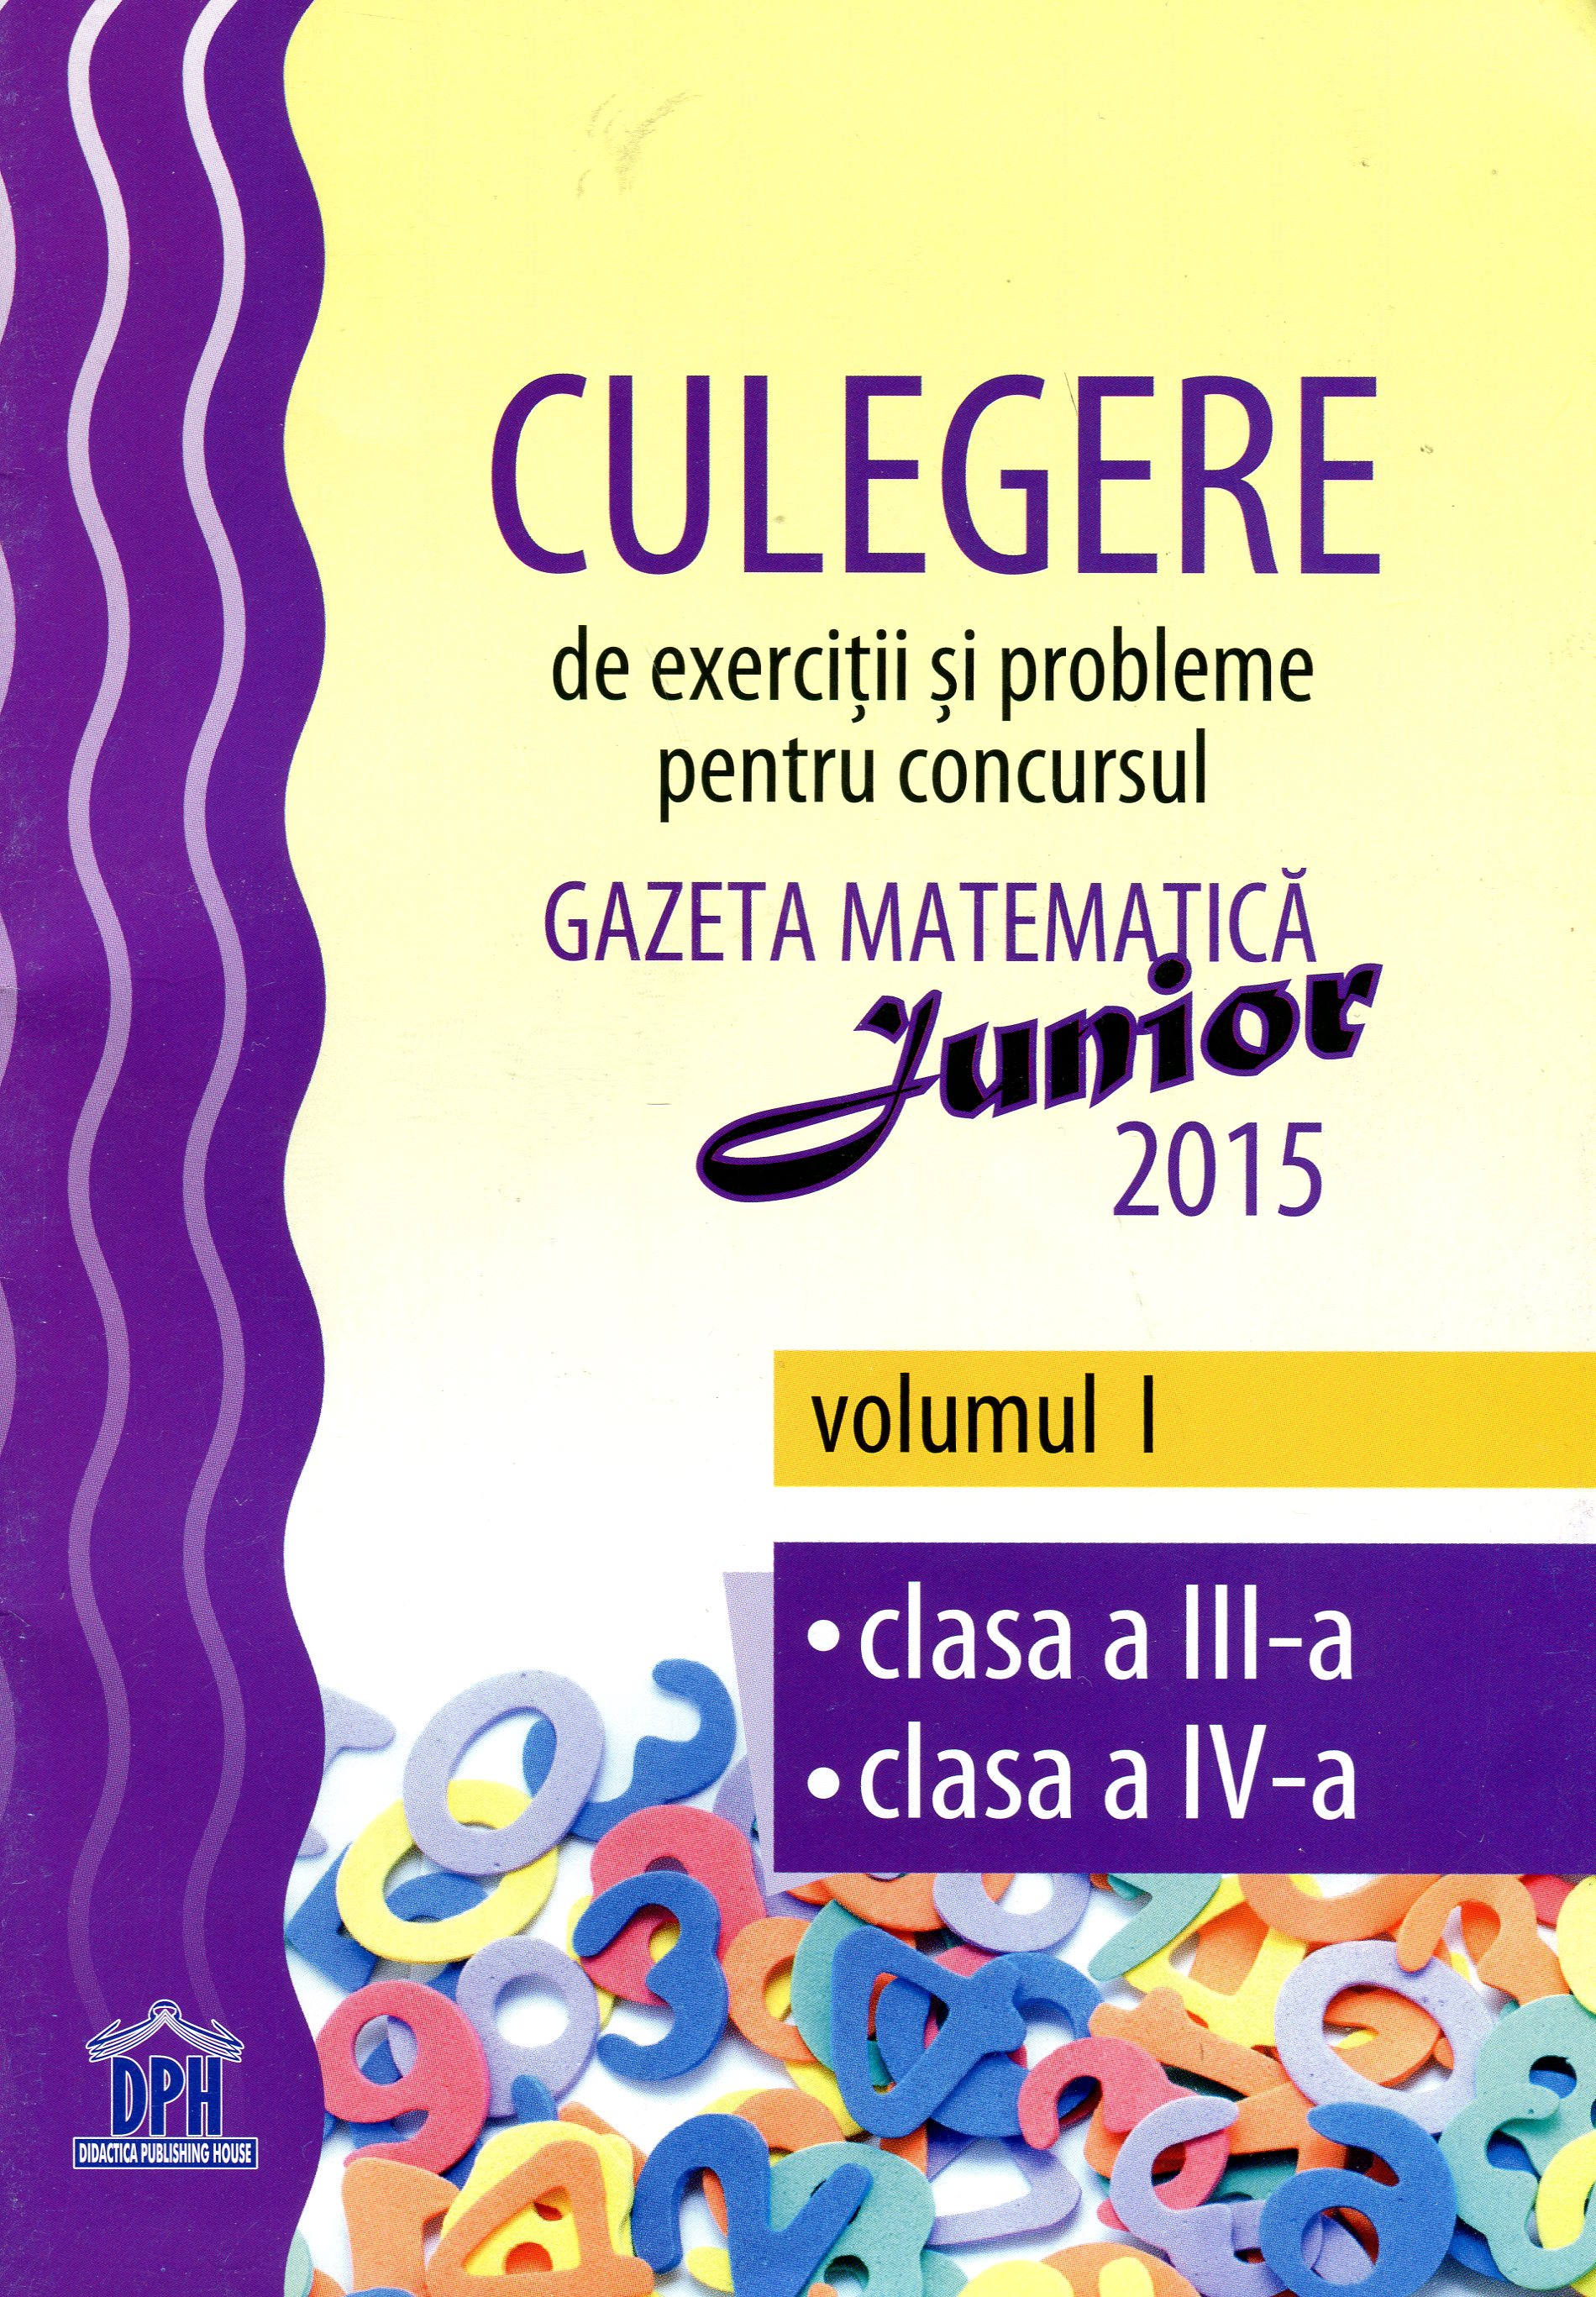 Gazeta matematica junior 2015 vol.I Cls a III-a Cls a IV-a - Culegere de exercitii